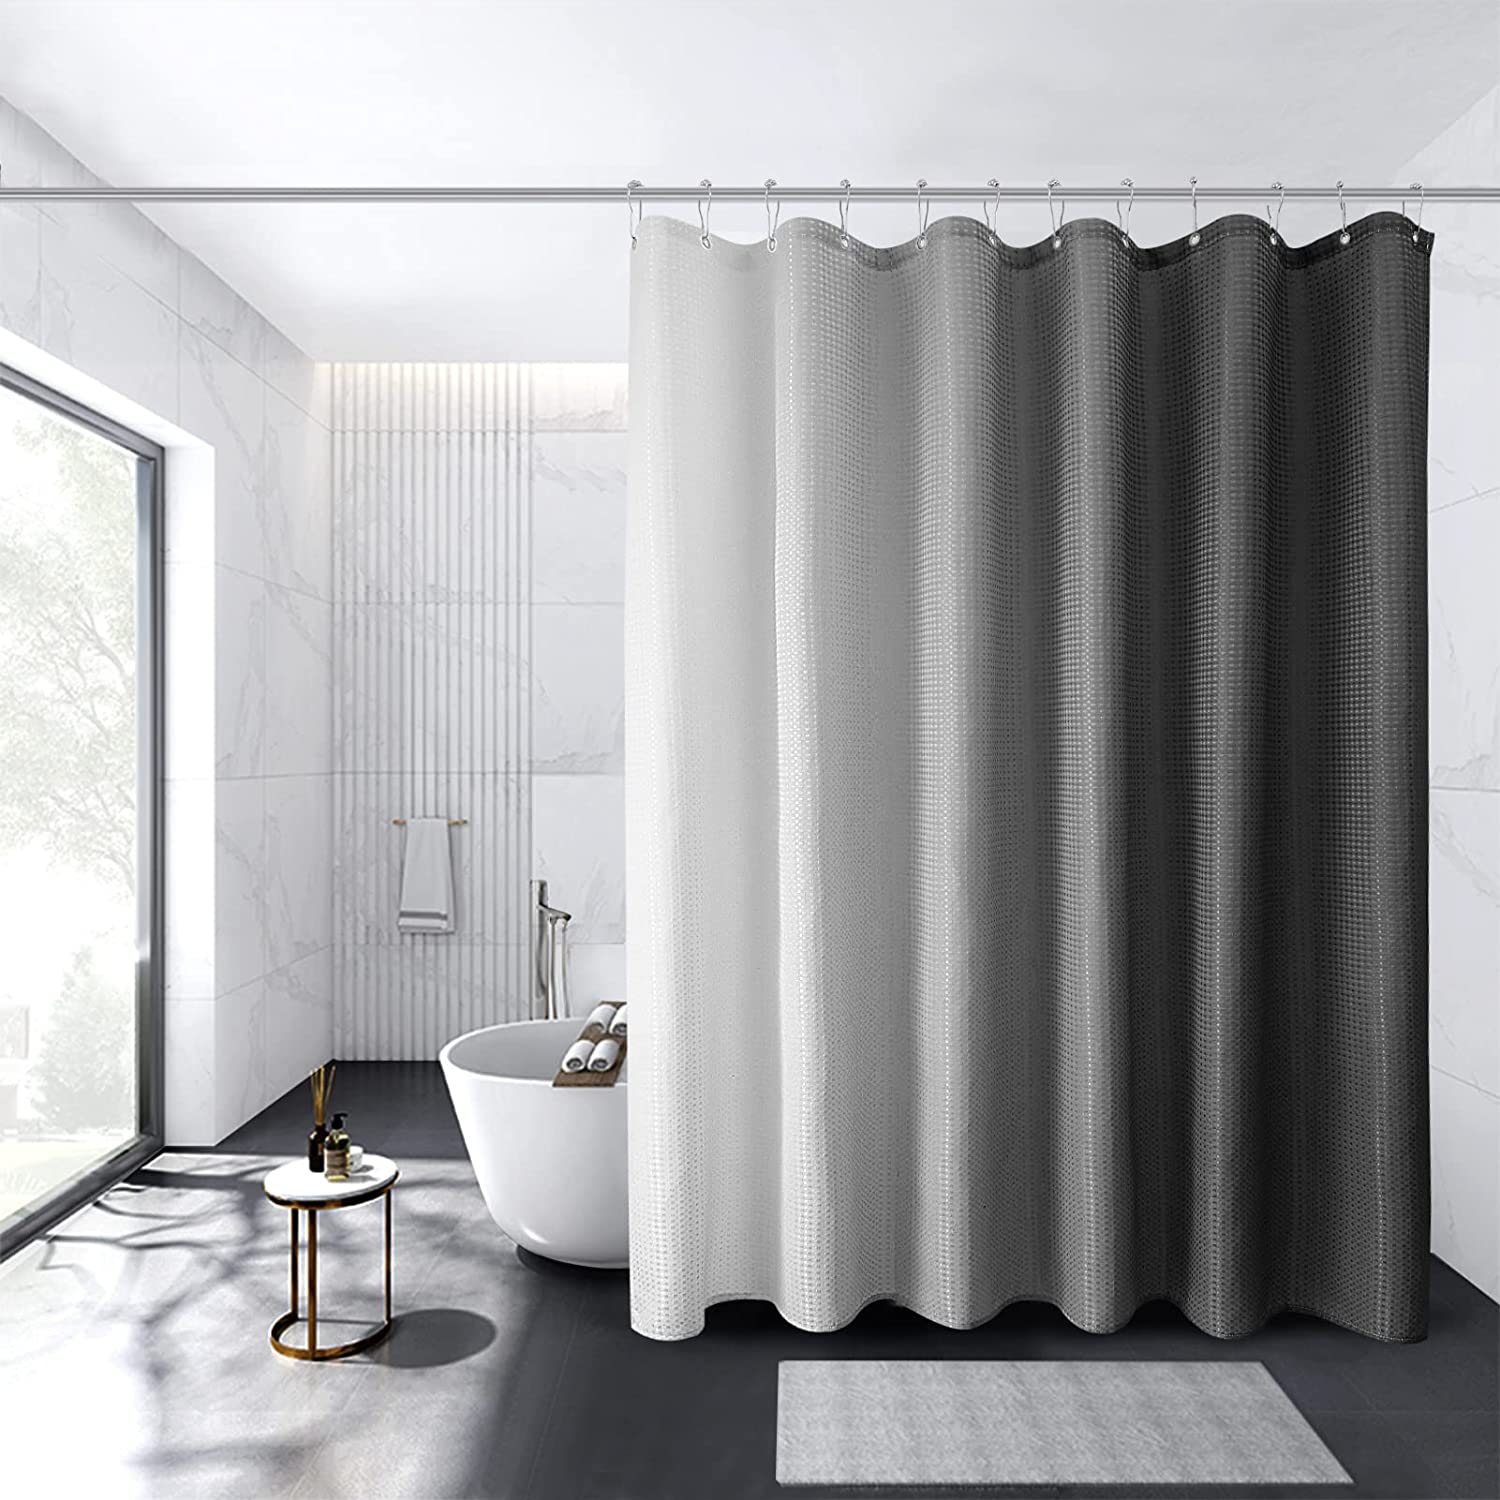 Shower Curtain Decor Set Ombre Colorful Design Black Gray Bath Curtains 12 Hooks 